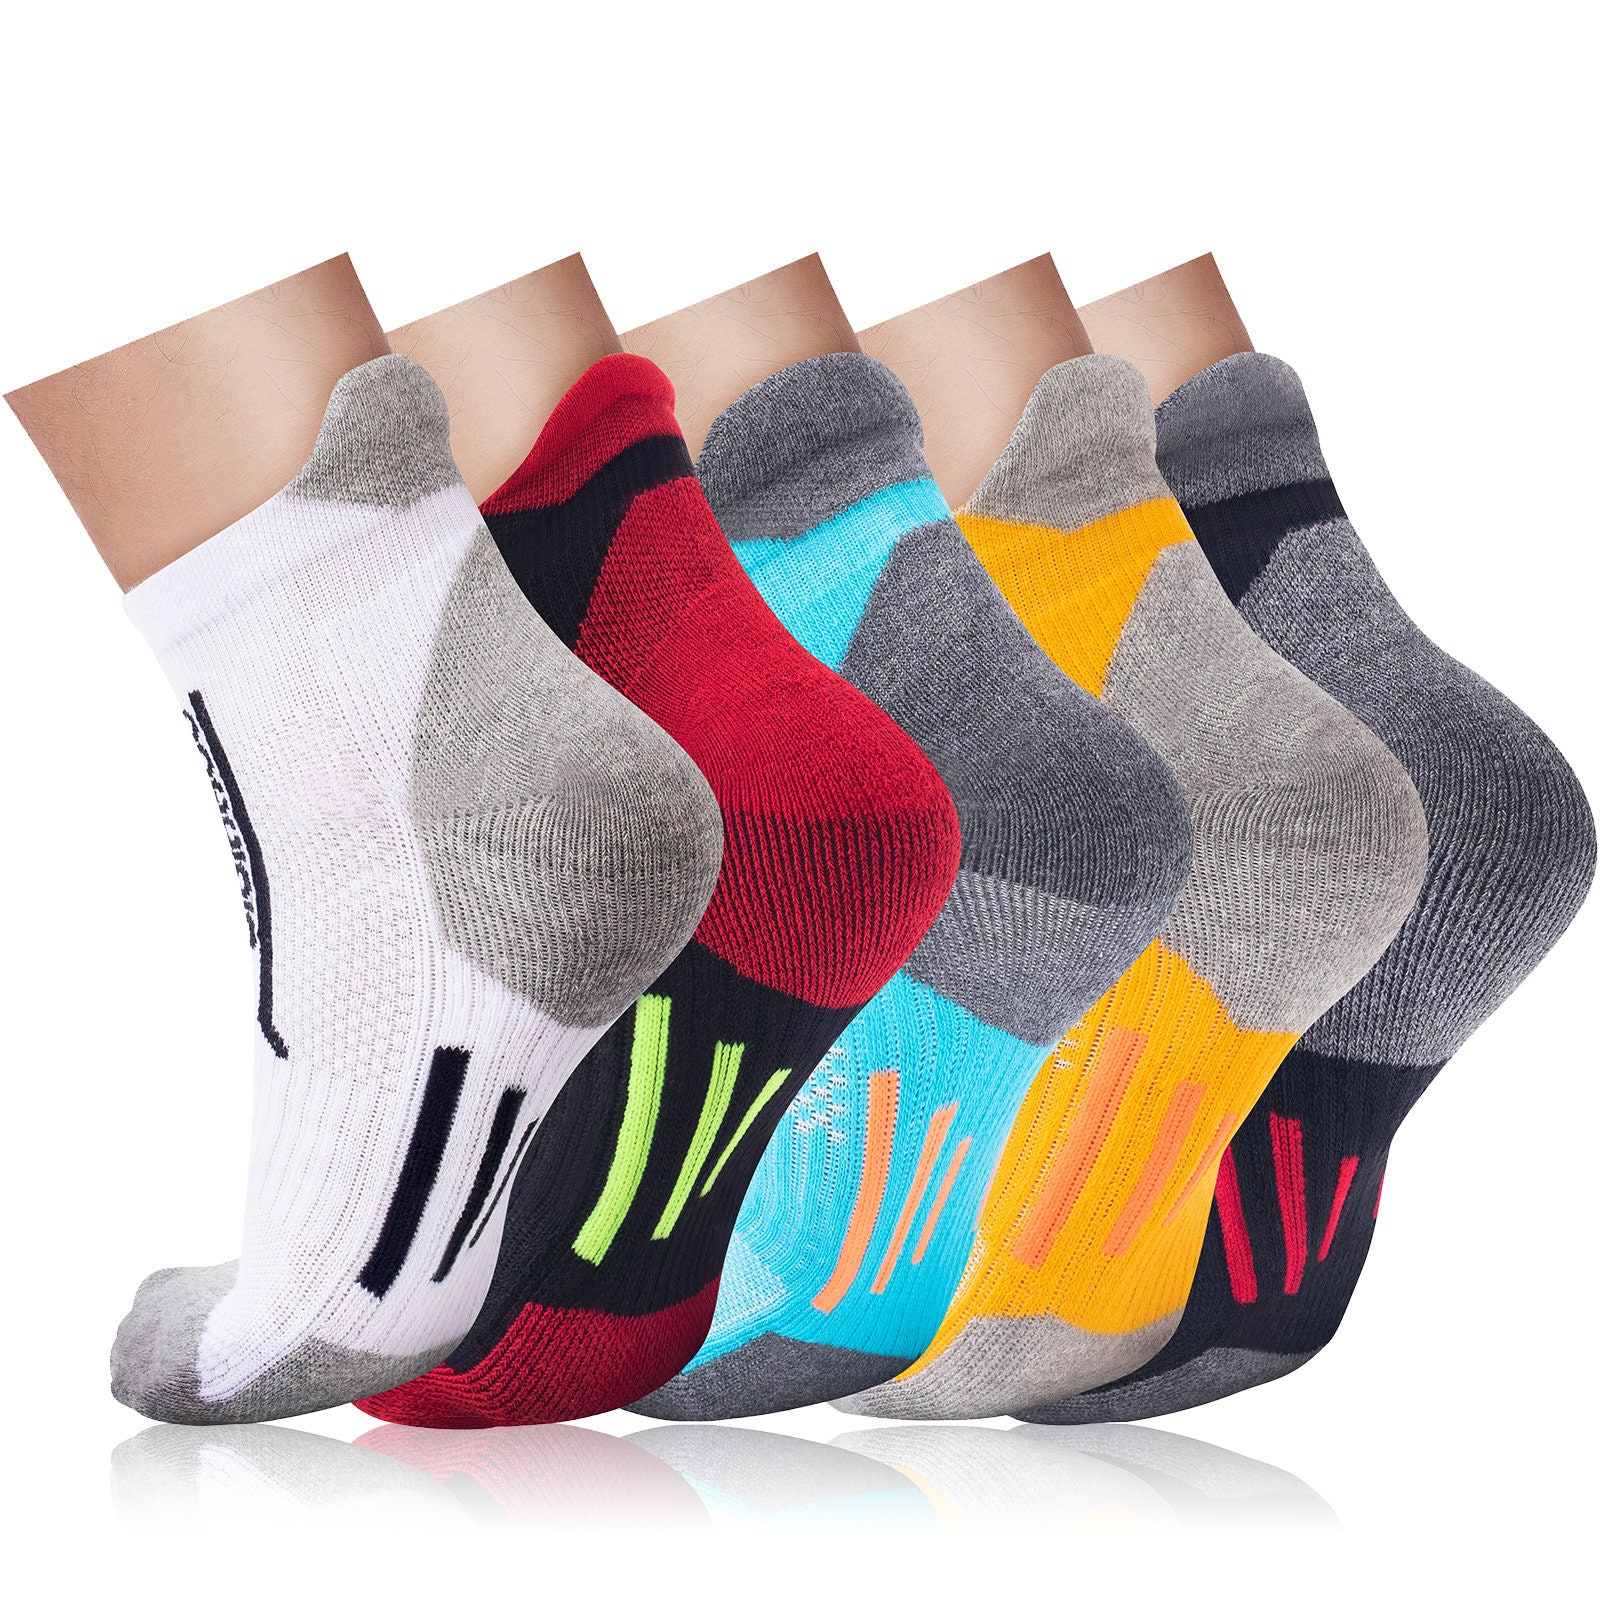 Belloxis Gym Gifts for Men Gym Socks Mens Socks Gifts for Gym Lovers Men  Cozy Socks Comfy Socks Crew Socks for Men Black Socks Cotton Socks Gifts  for Men at  Men's